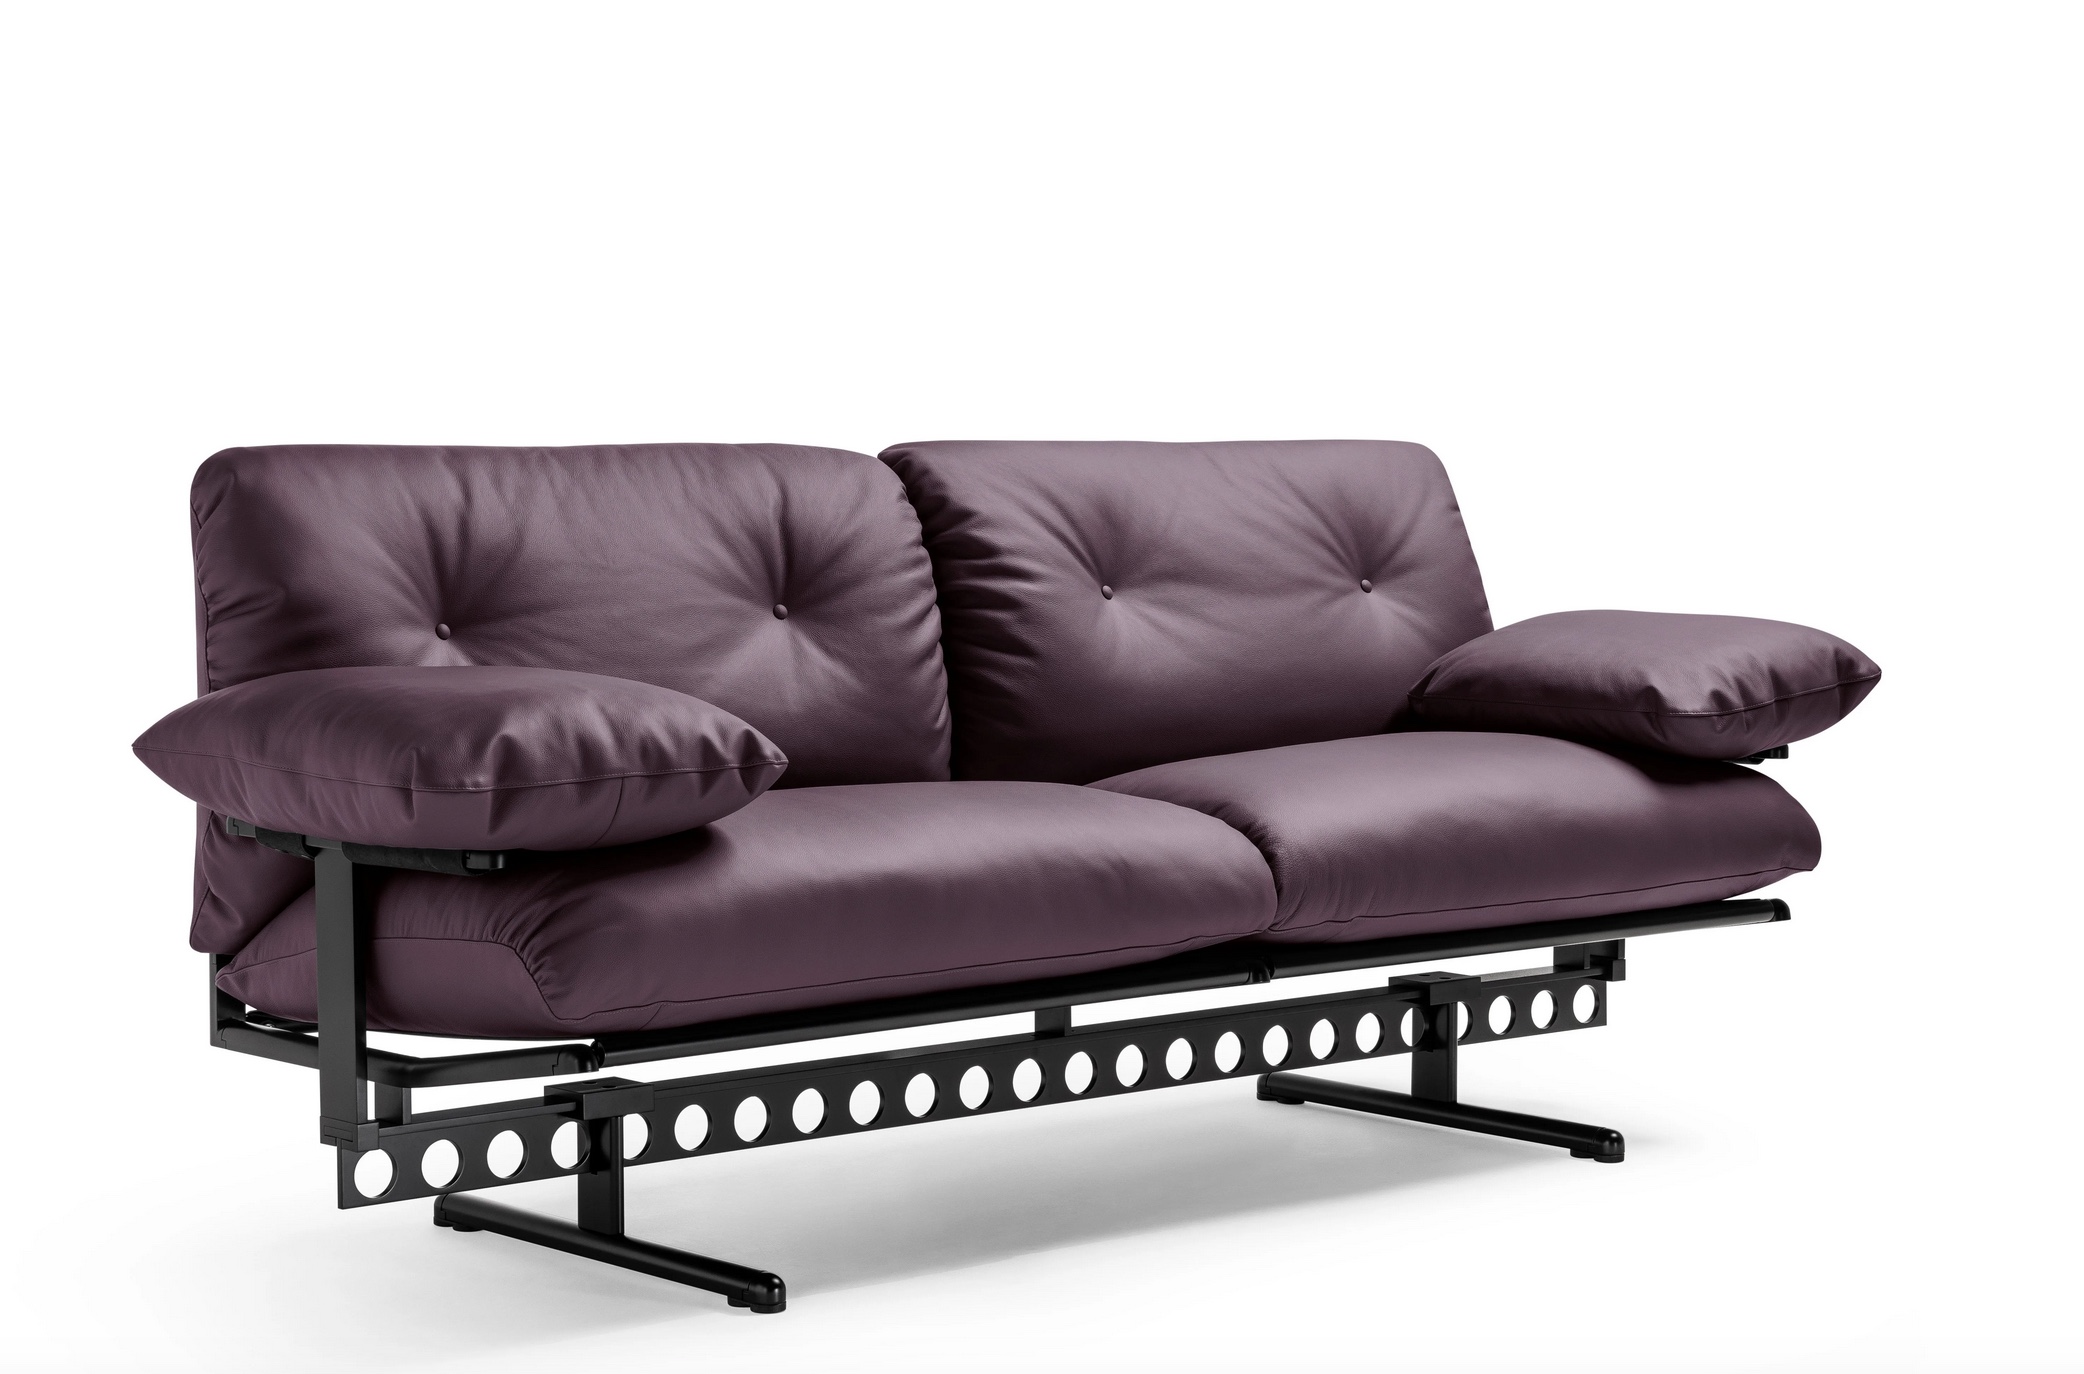 At Design Miami: Oeuverture Sofa